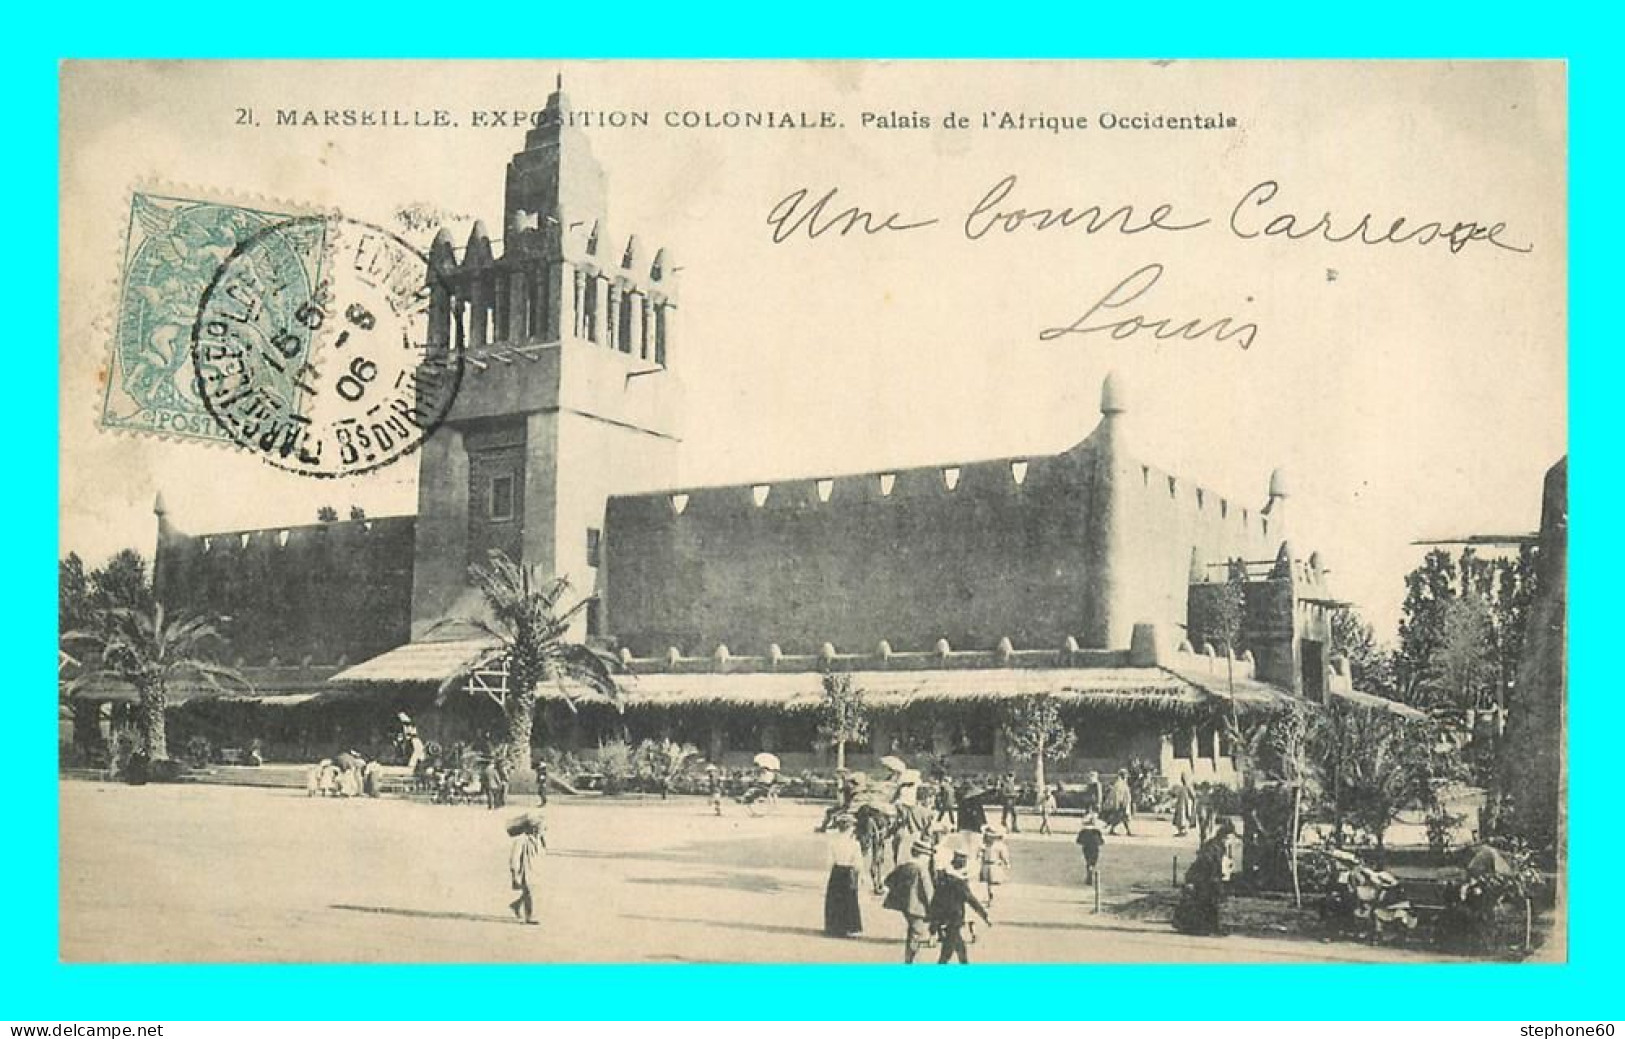 A868 / 447 13 - MARSEILLE Exposition Coloniale Palais De L'Afrique Occidentale - Expositions Coloniales 1906 - 1922